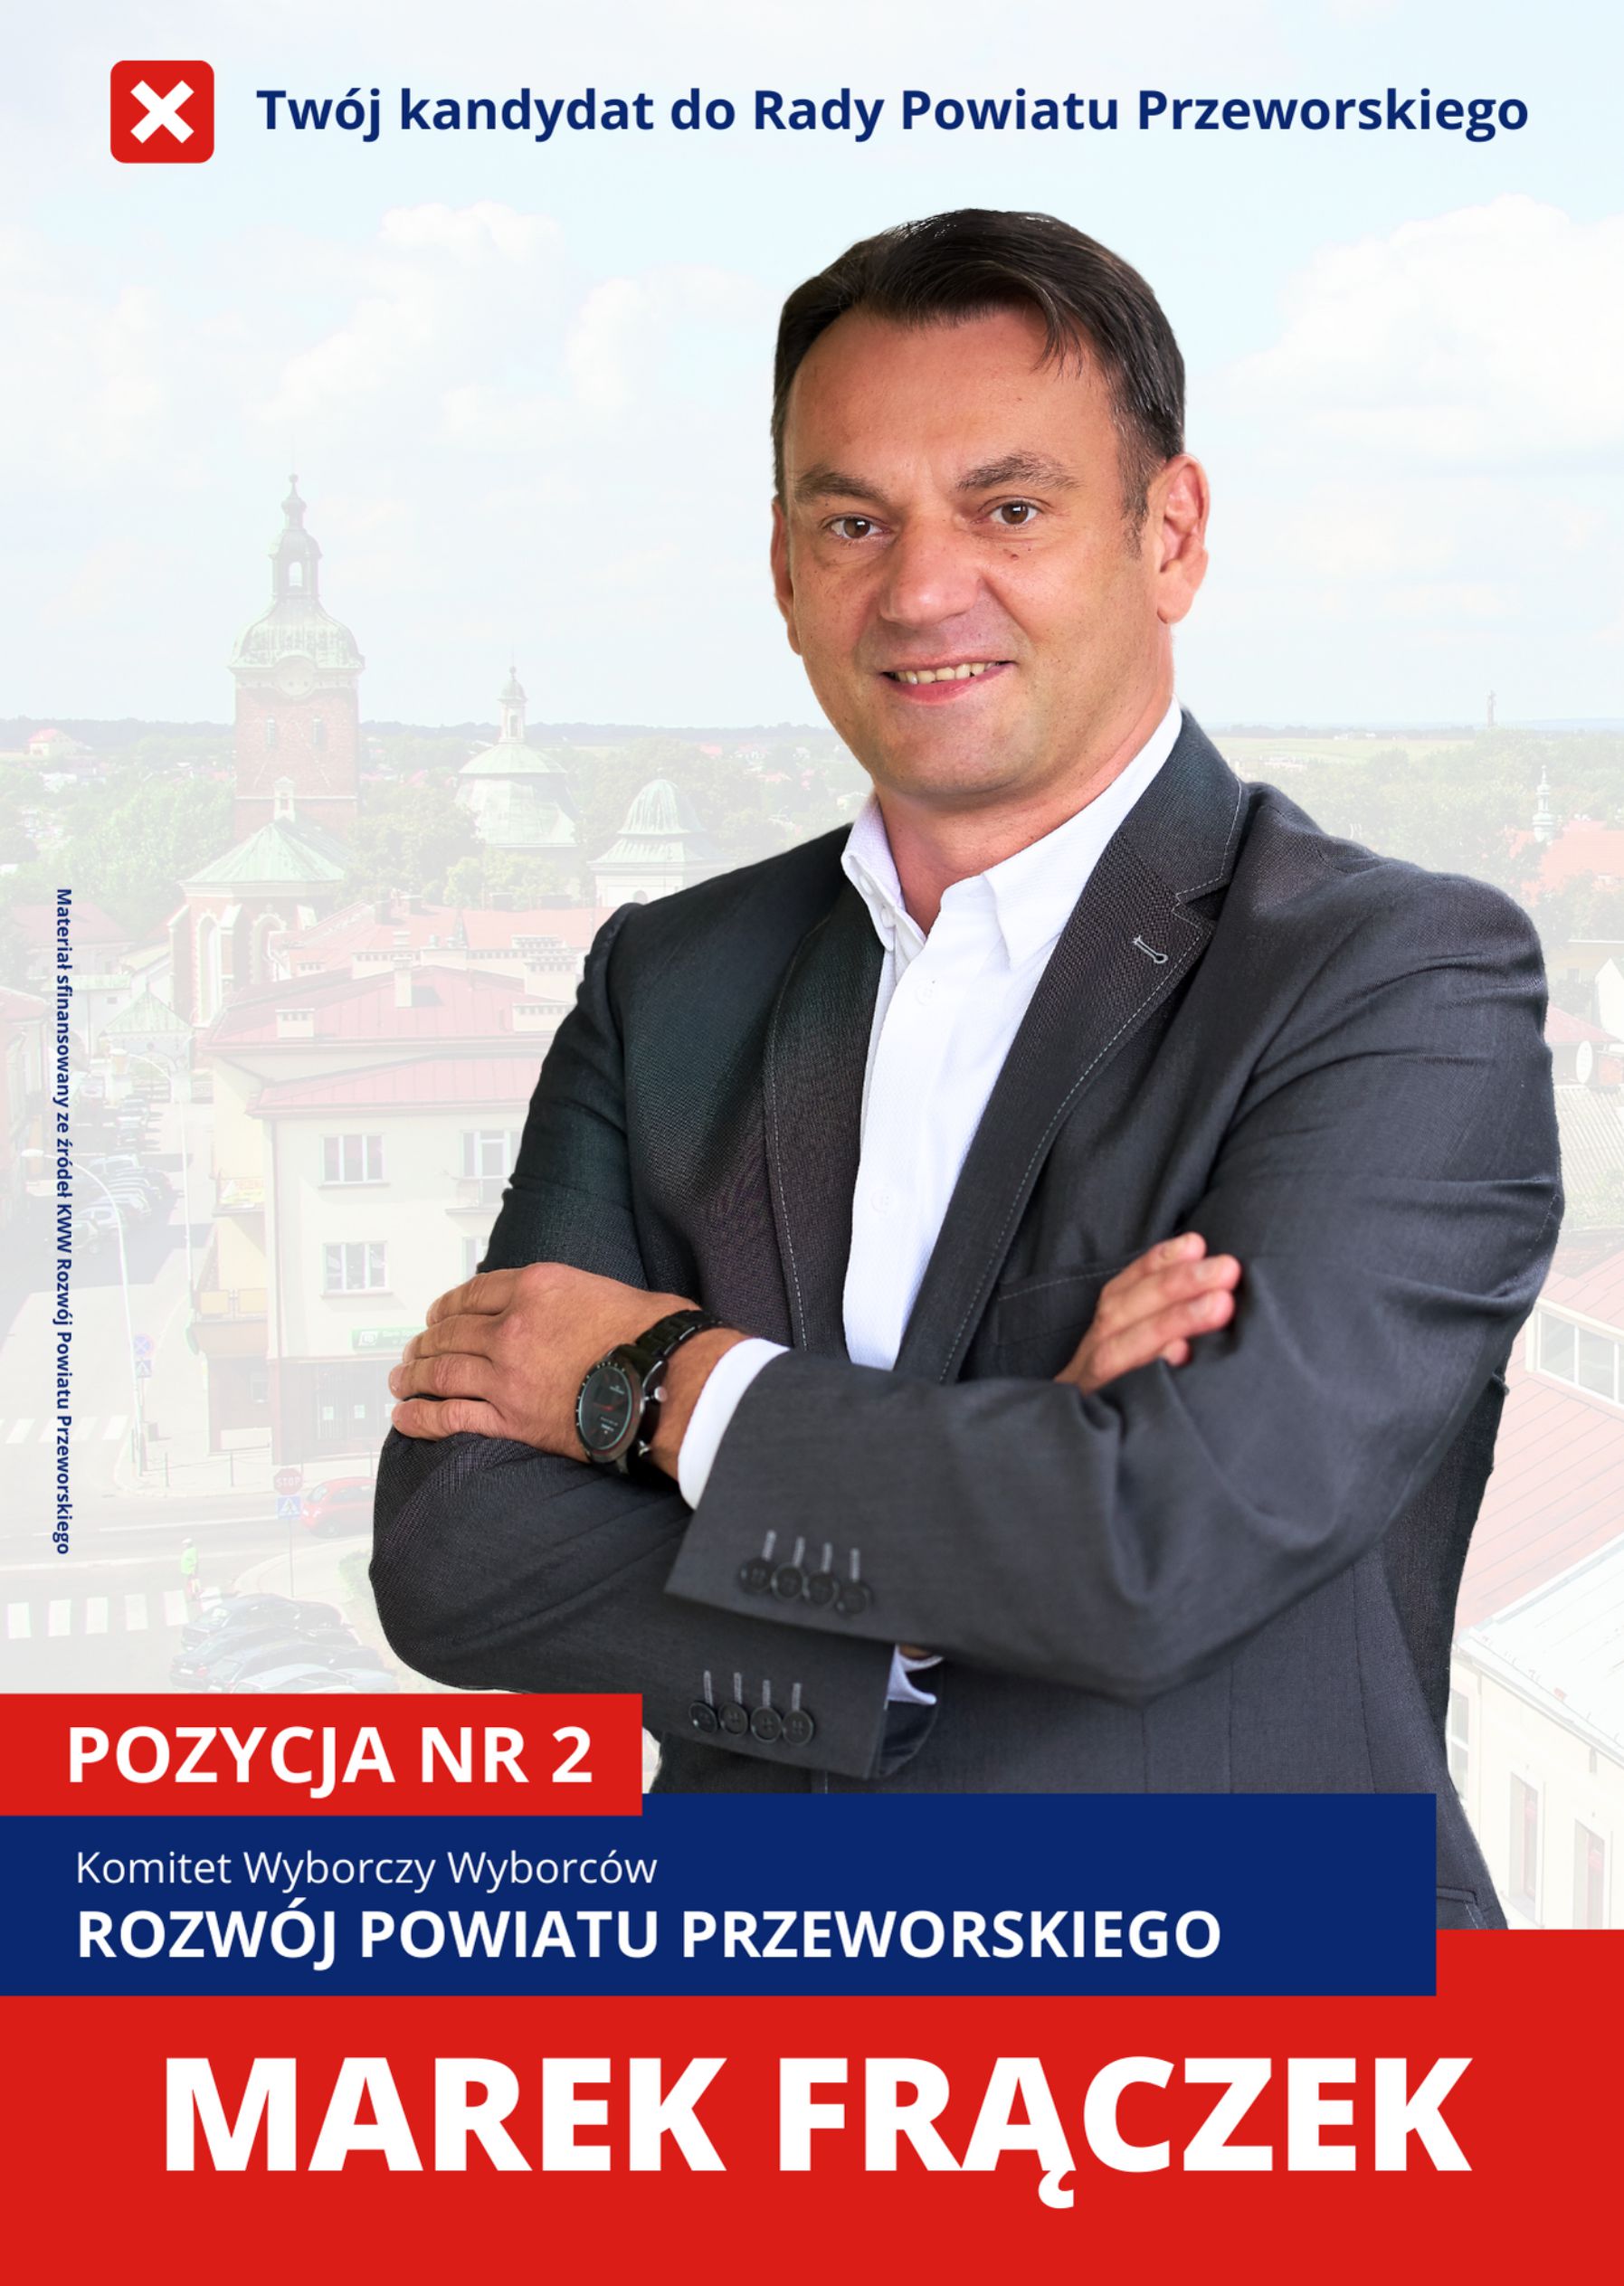 Marek Frączek – kandydat do Rady Powiatu Przeworskiego